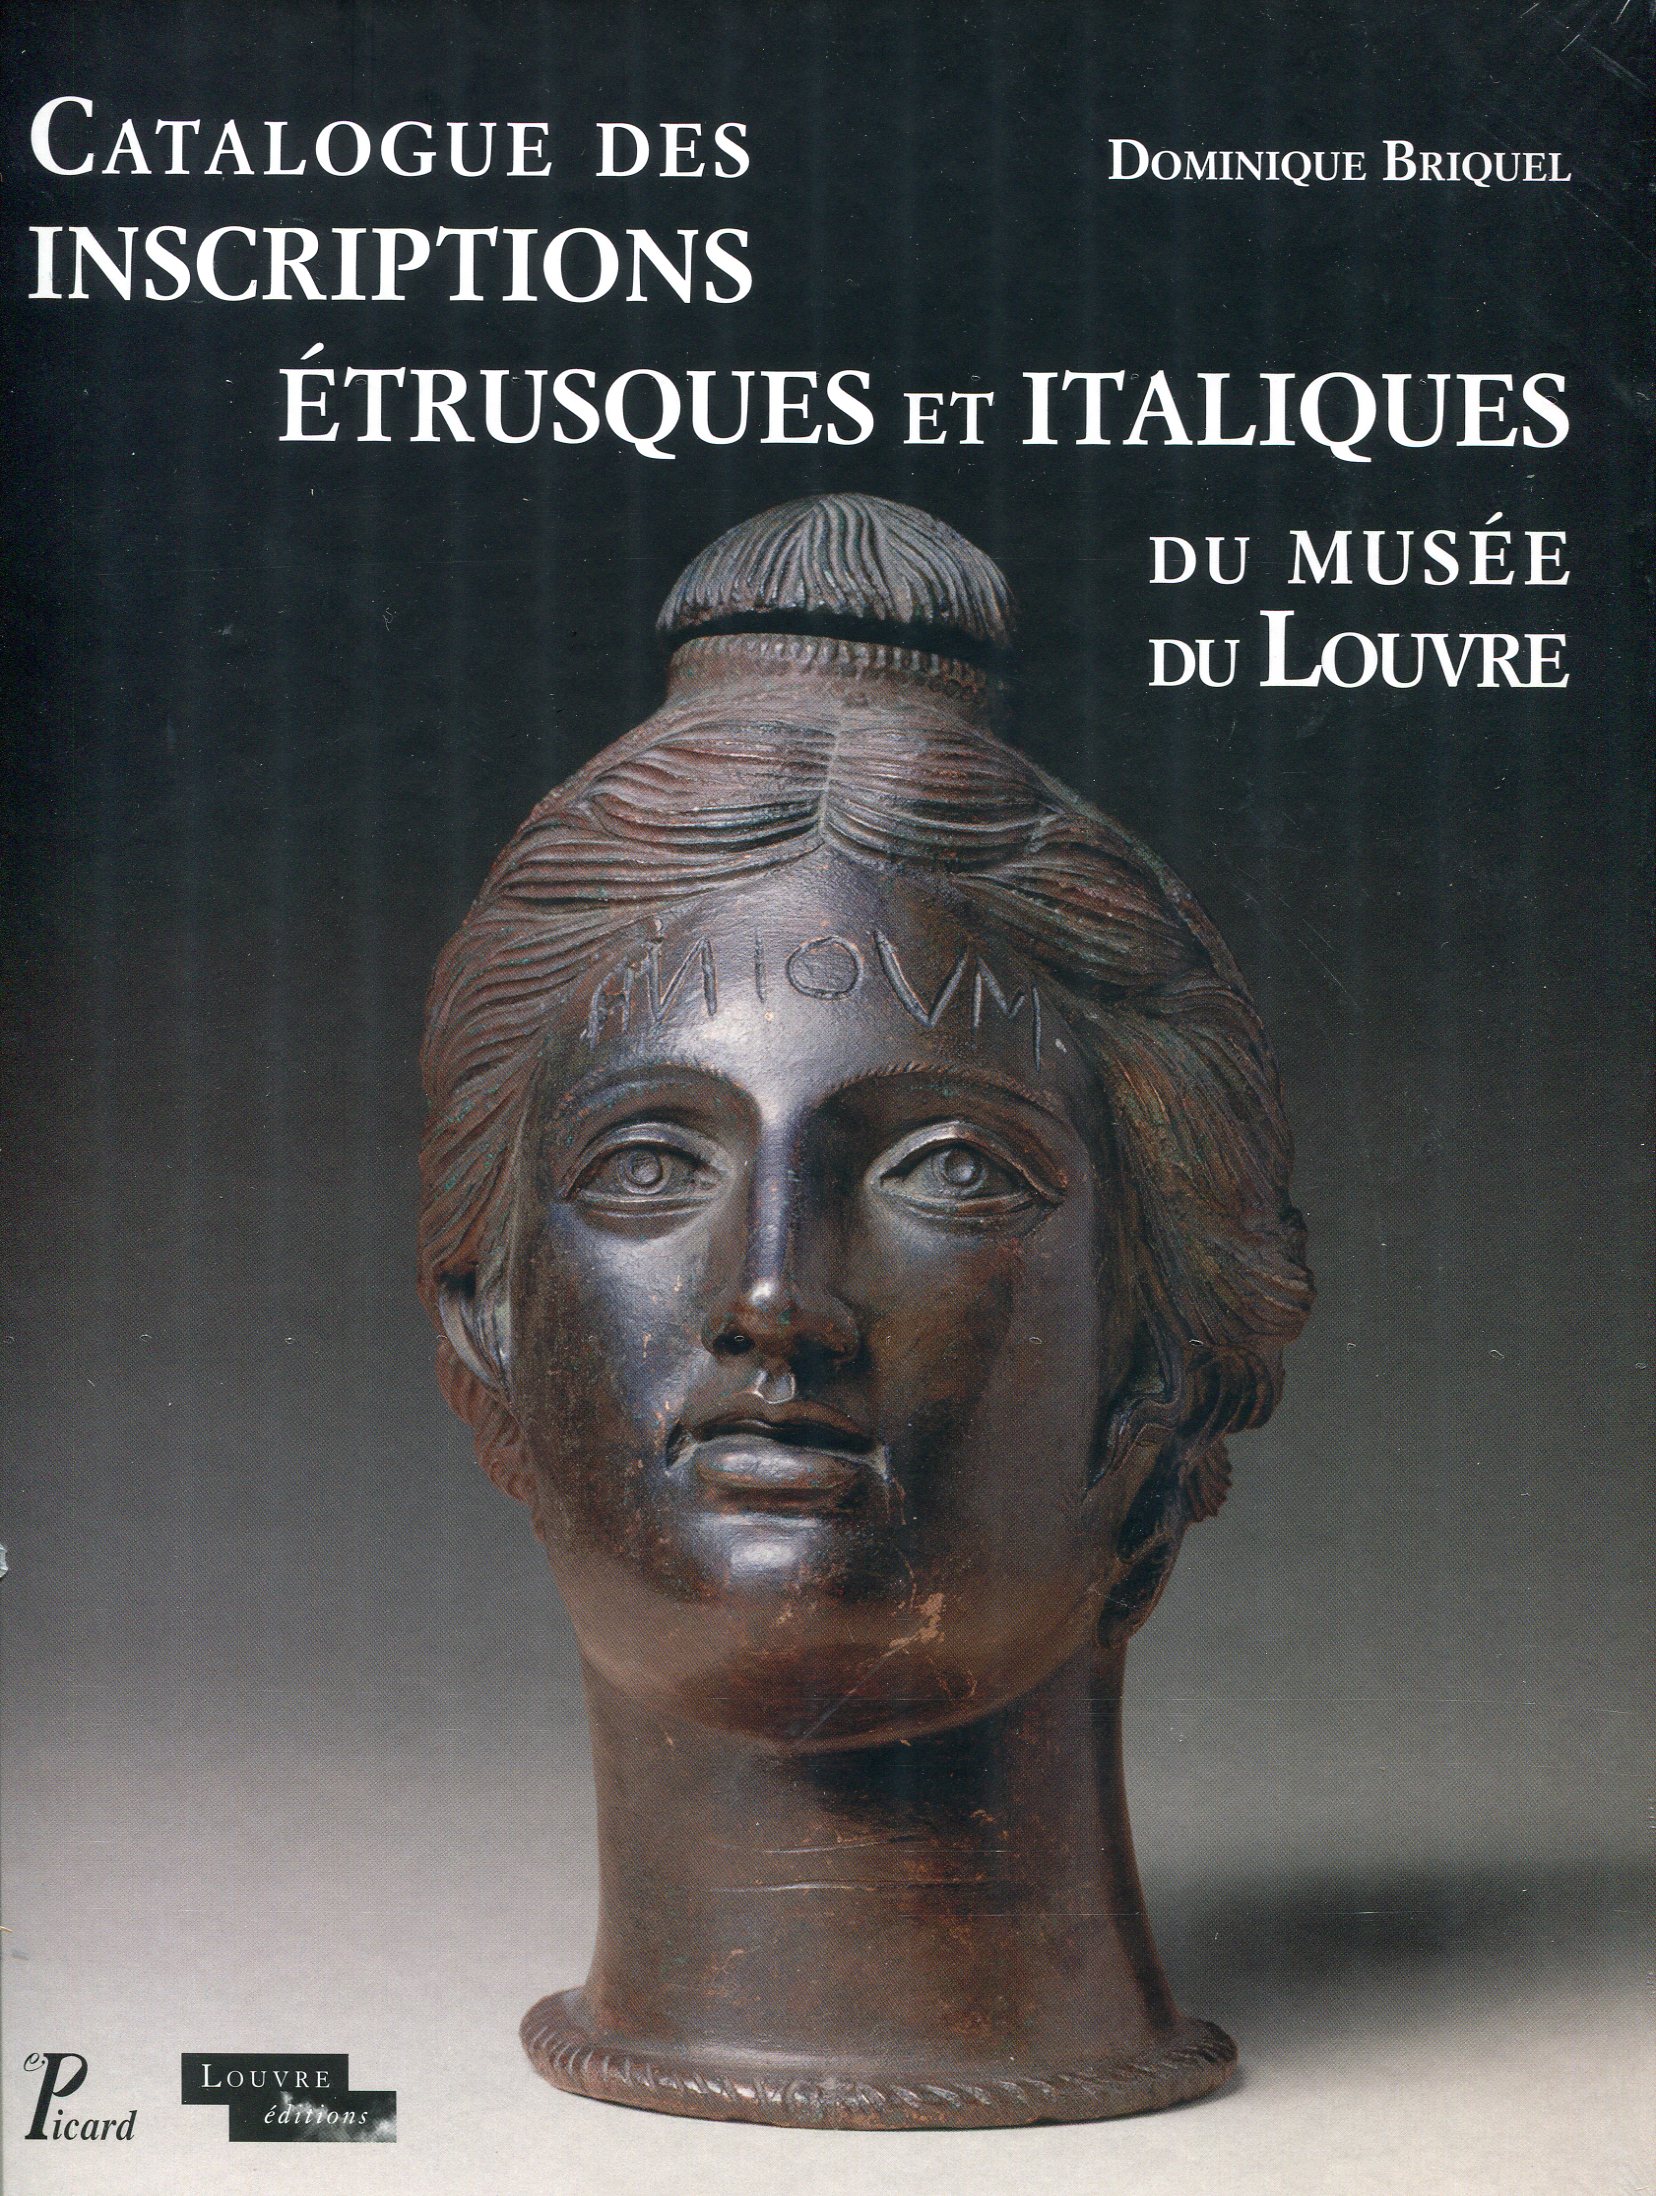 Catalogue des inscriptions étrusques et italiques du musée du Louvre, 2016, 520 p.